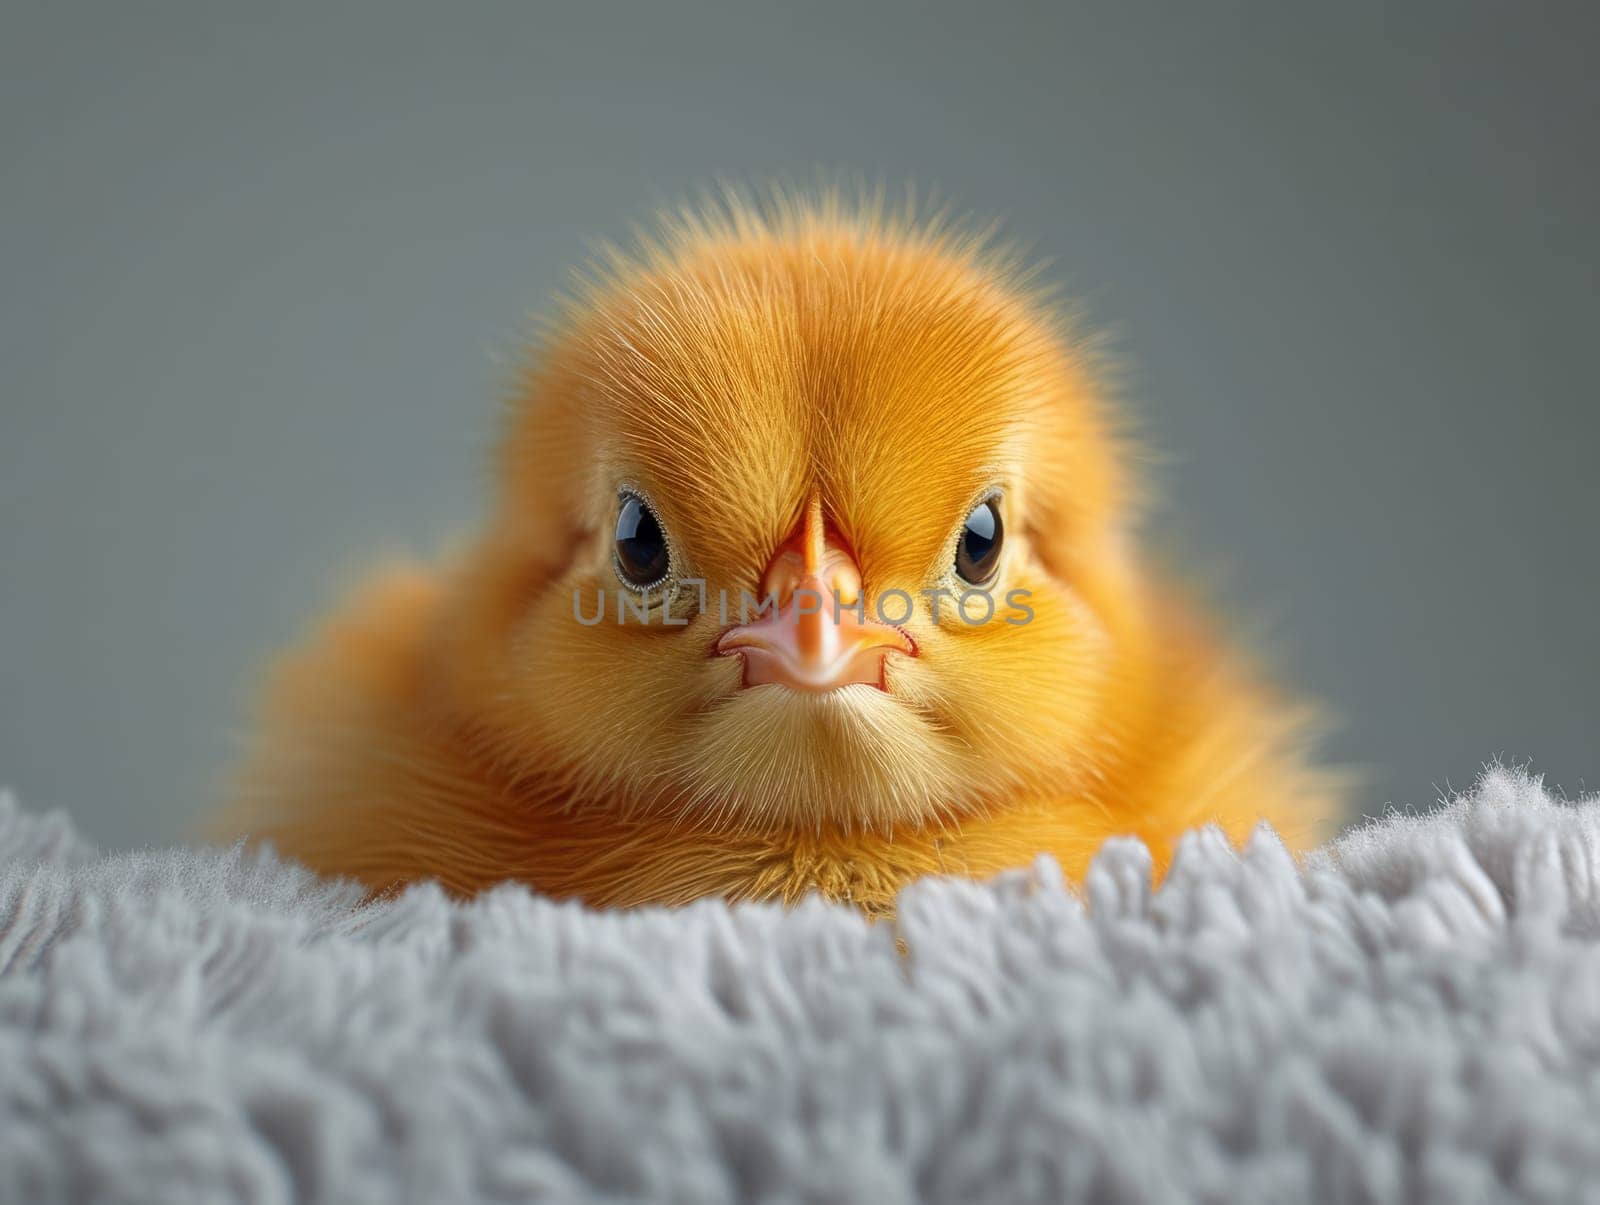 Cute Little Yellow Chick in Cosy Blanket. Fluffy Little Bird by iliris